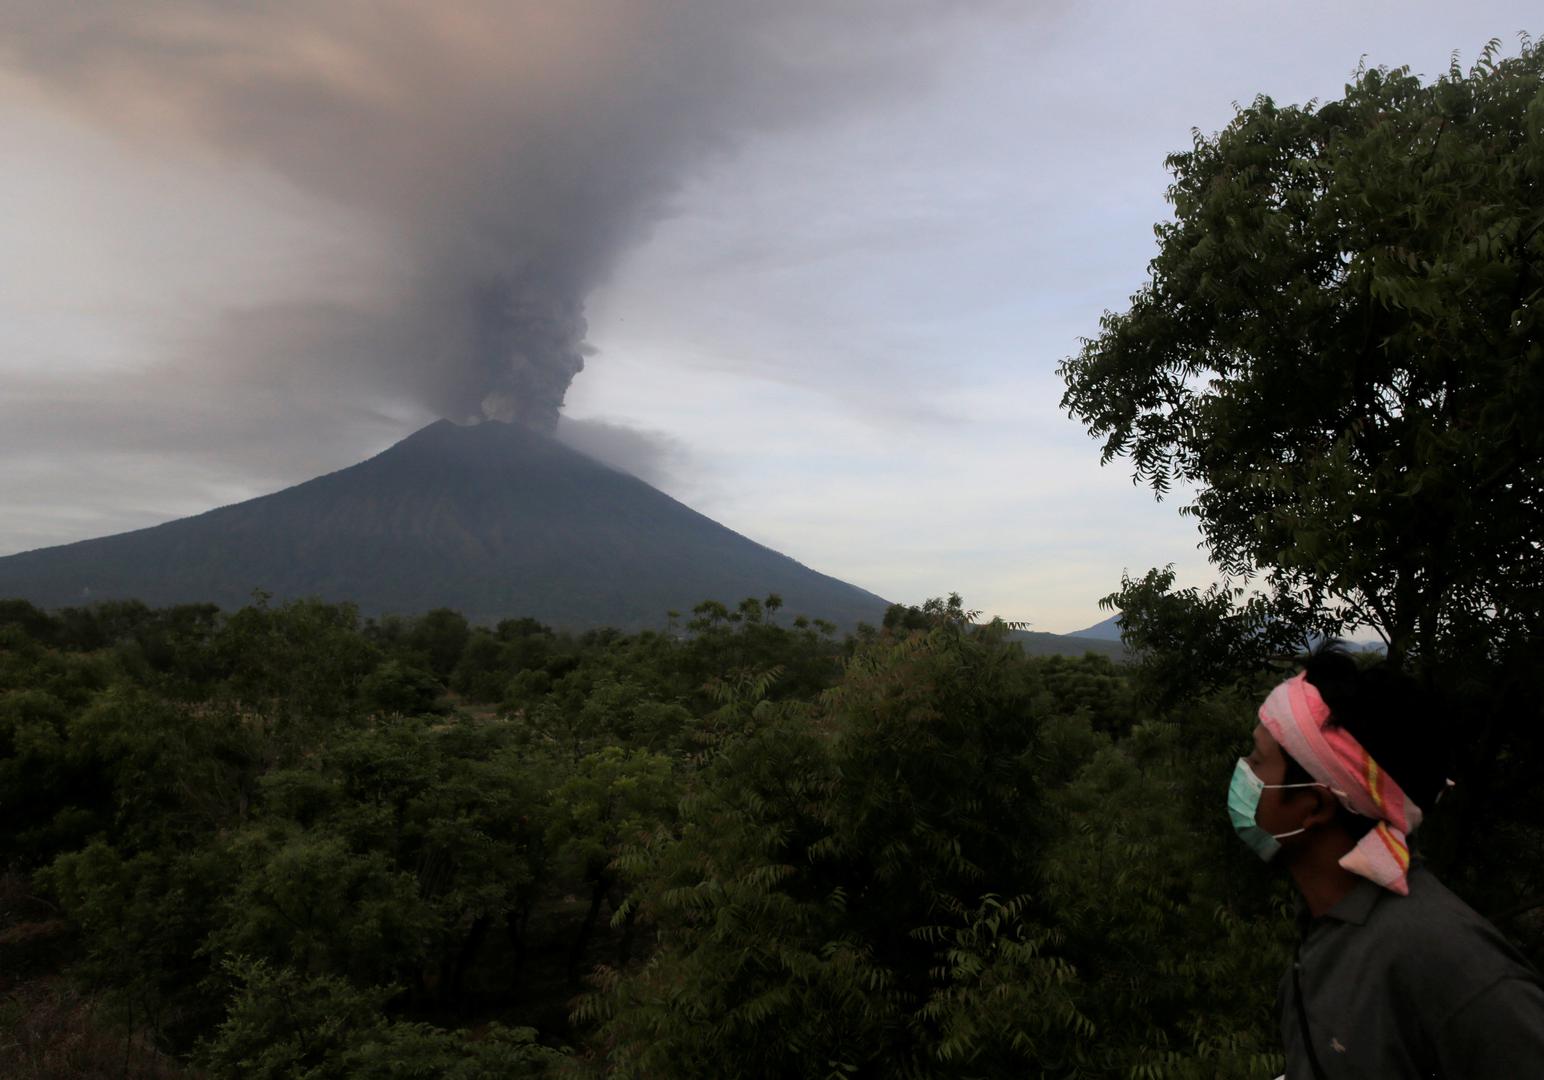 'Razina uzbune od vulkana podignuta je na najvišu razinu', izjavio je visoki dužnosnik nacionalnog centra za vulkanologiju Indonezije Gede Suandika.